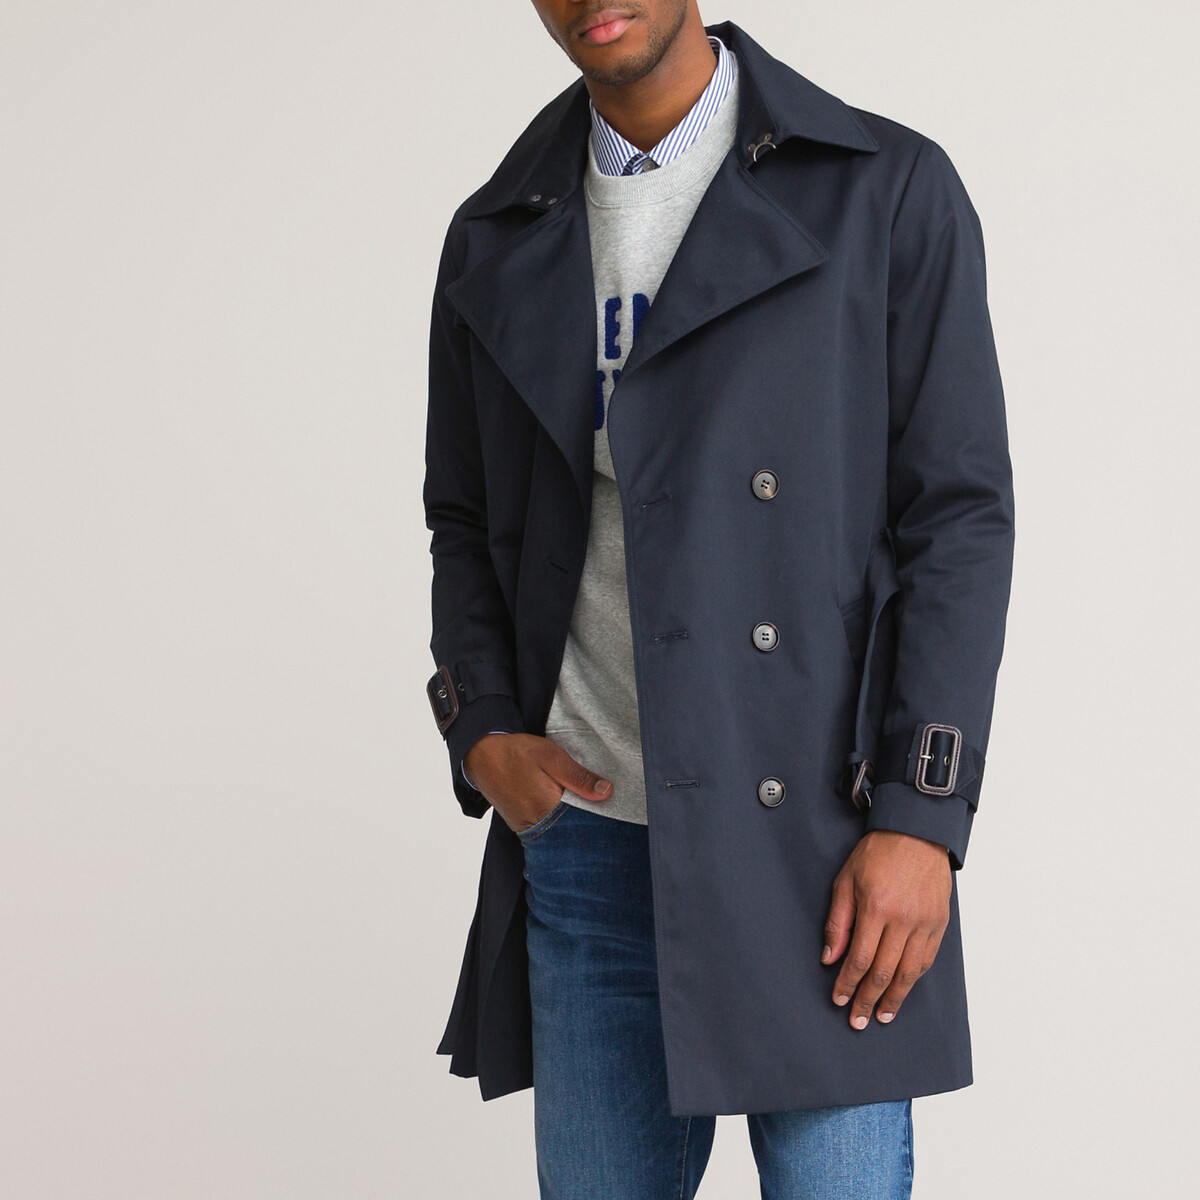 Trenchcoat Noir Taille: 3XL Miinto Homme Vêtements Manteaux & Vestes Manteaux Trench-coats Homme 